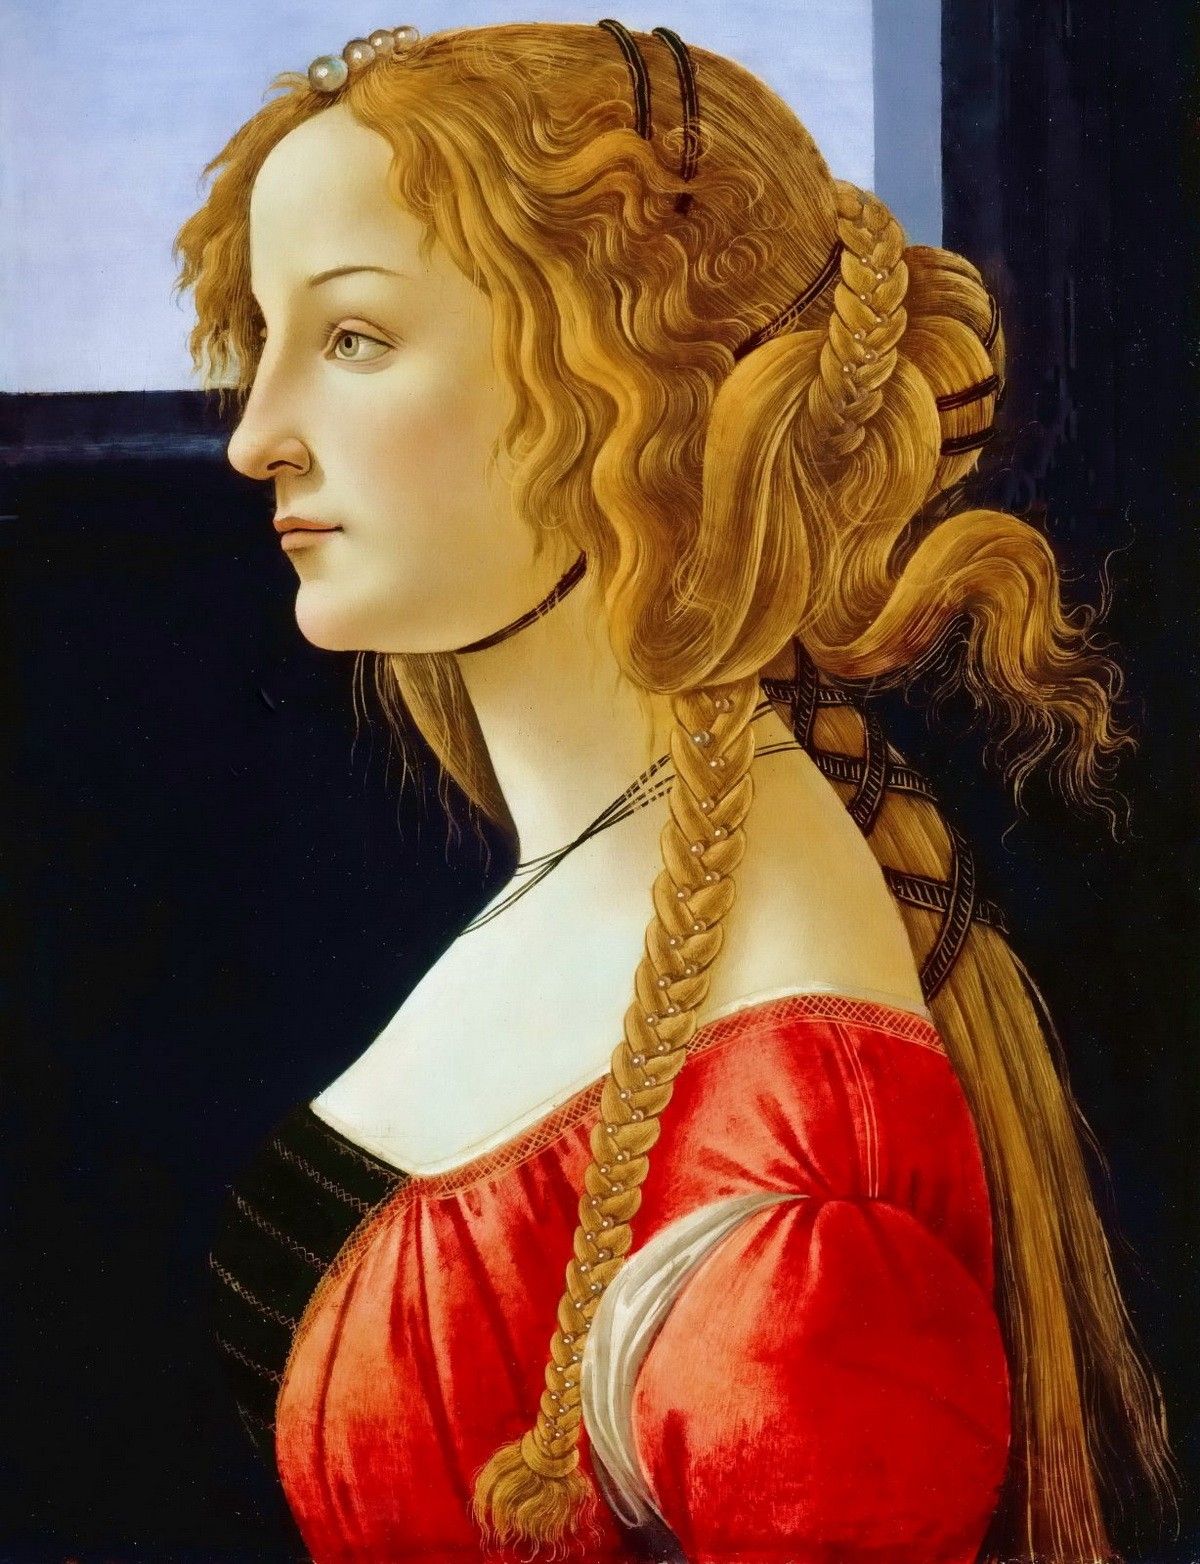 «Портрет молодой женщины» — картина живописца тосканской школы Сандро Боттичелли, написанная в 1476-1480 гг. Авторство Боттичелли предположительно. Картина хранится в Берлинской галерее. В модели предполагают Симонетту Веспуччи, или же мать или жену Лоренцо Великолепного. Портрет происходит из дворца Медичи и имеет наибольшие основания считаться картиной, описанной Вазари…